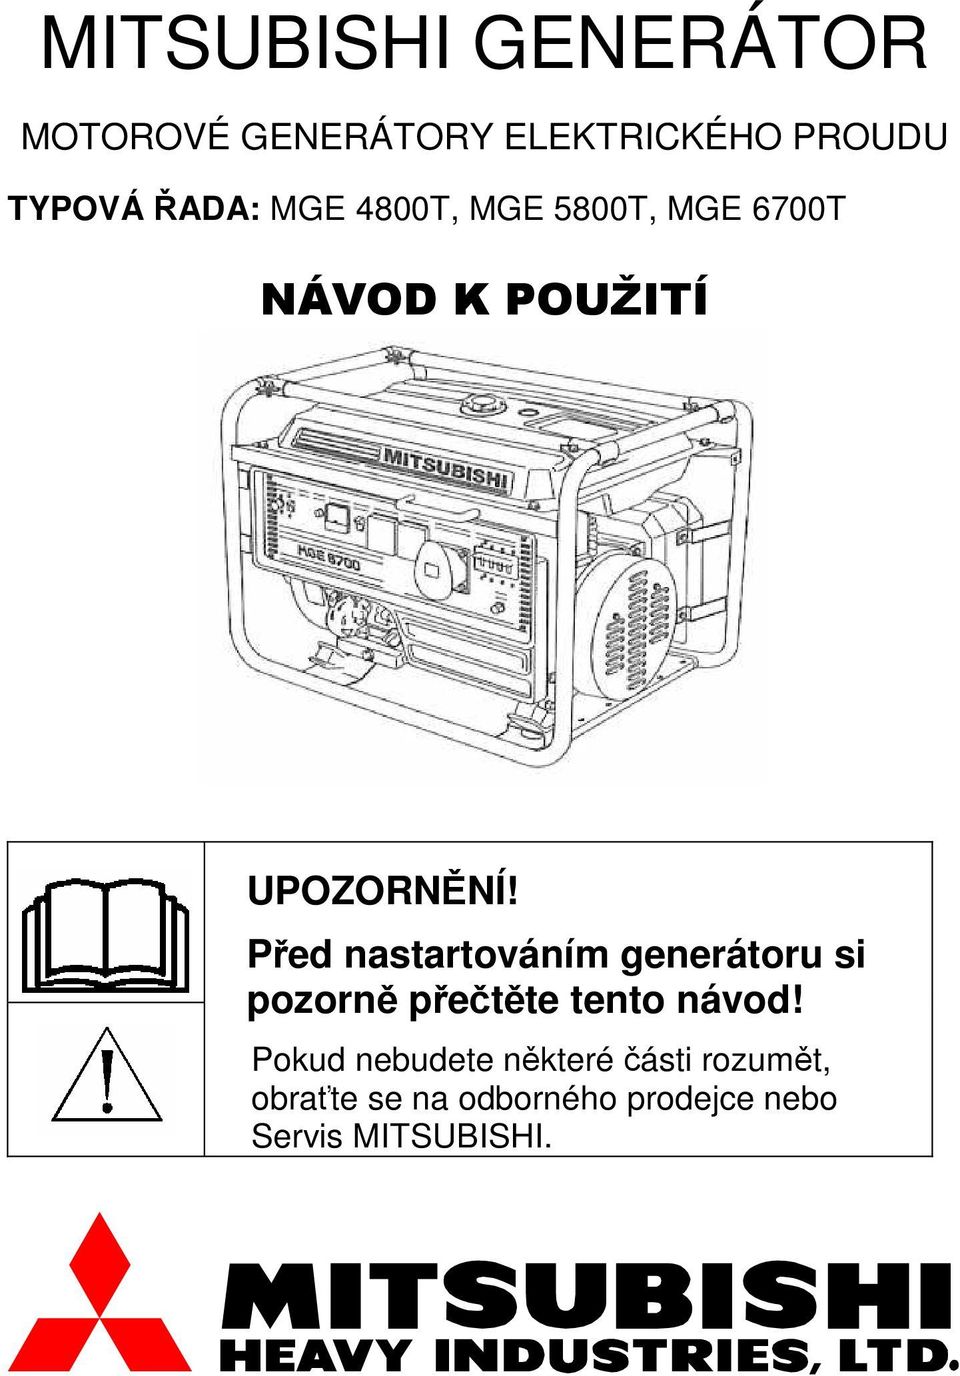 Před nastartováním generátoru si pozorně přečtěte tento návod!